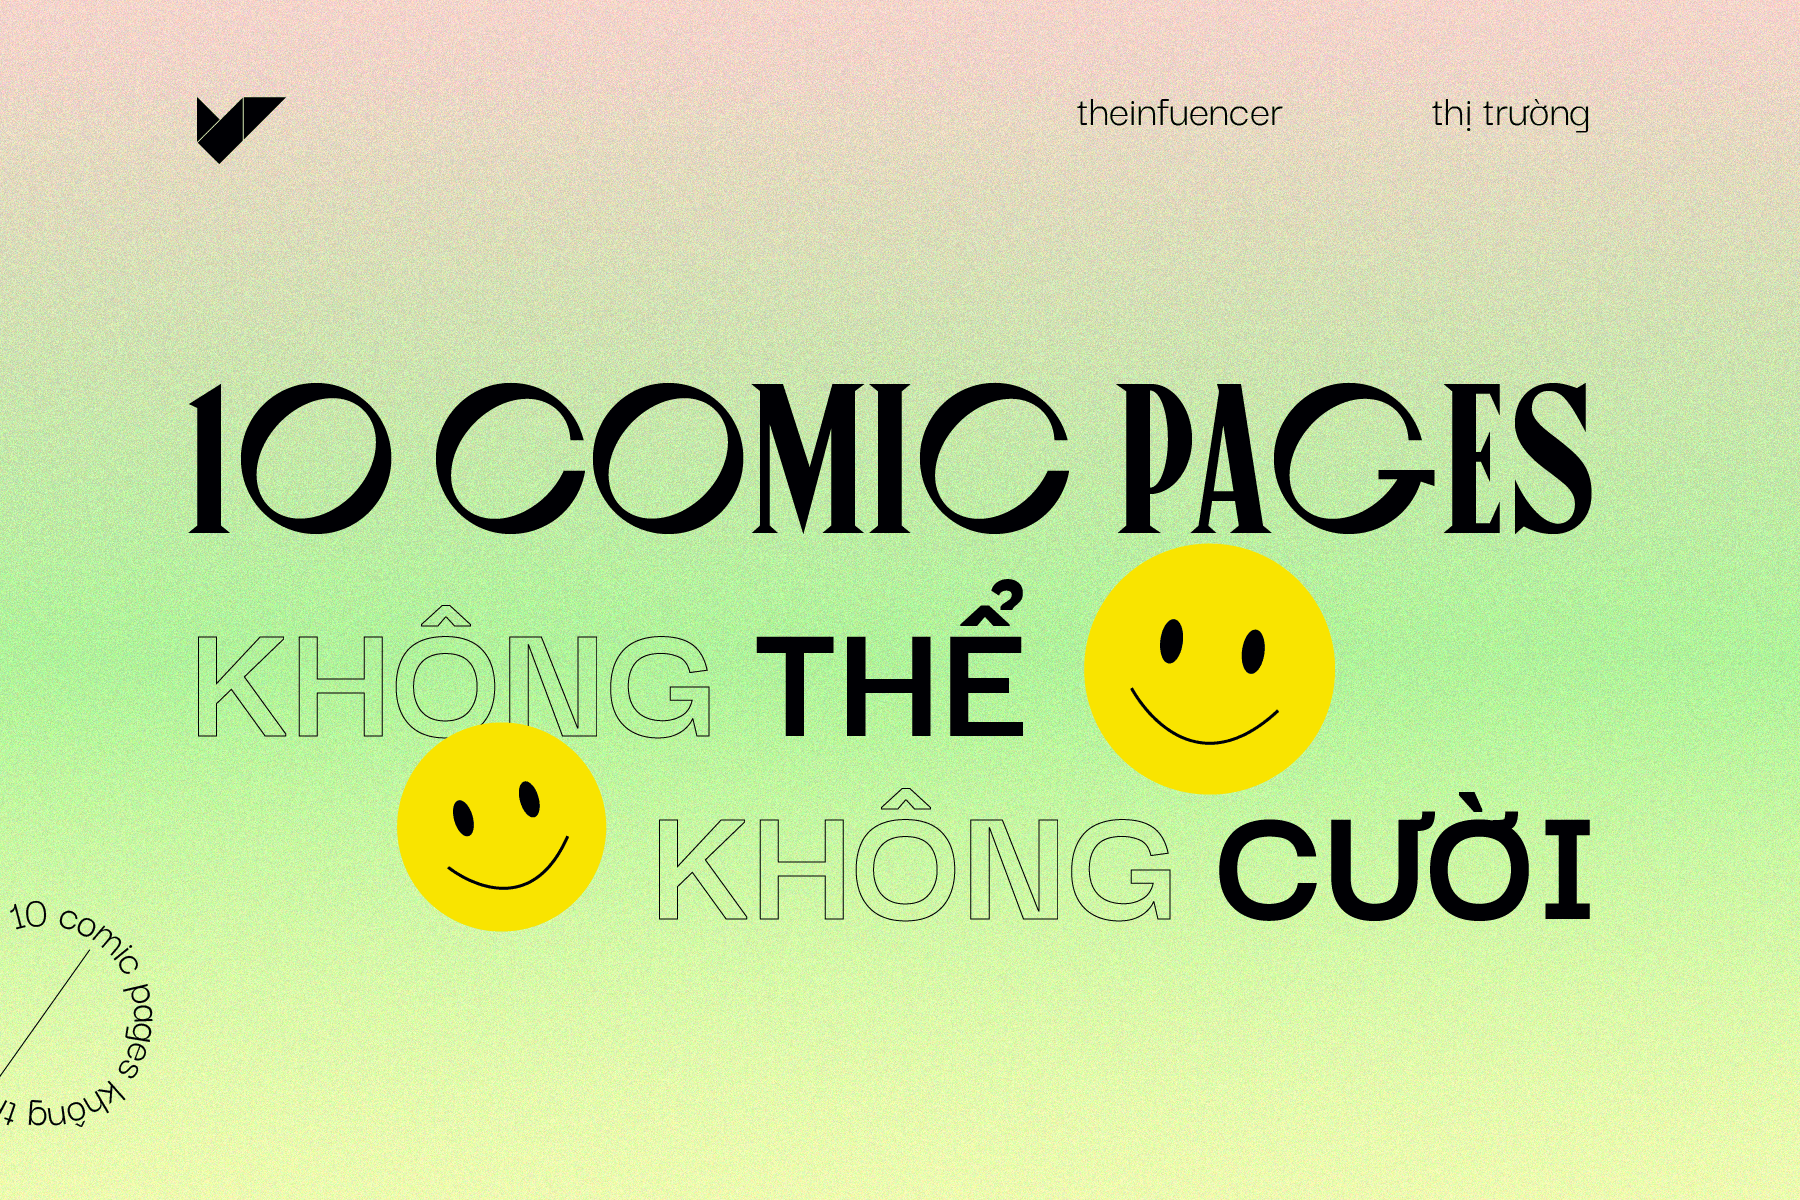 10 comic pages không thể không cười